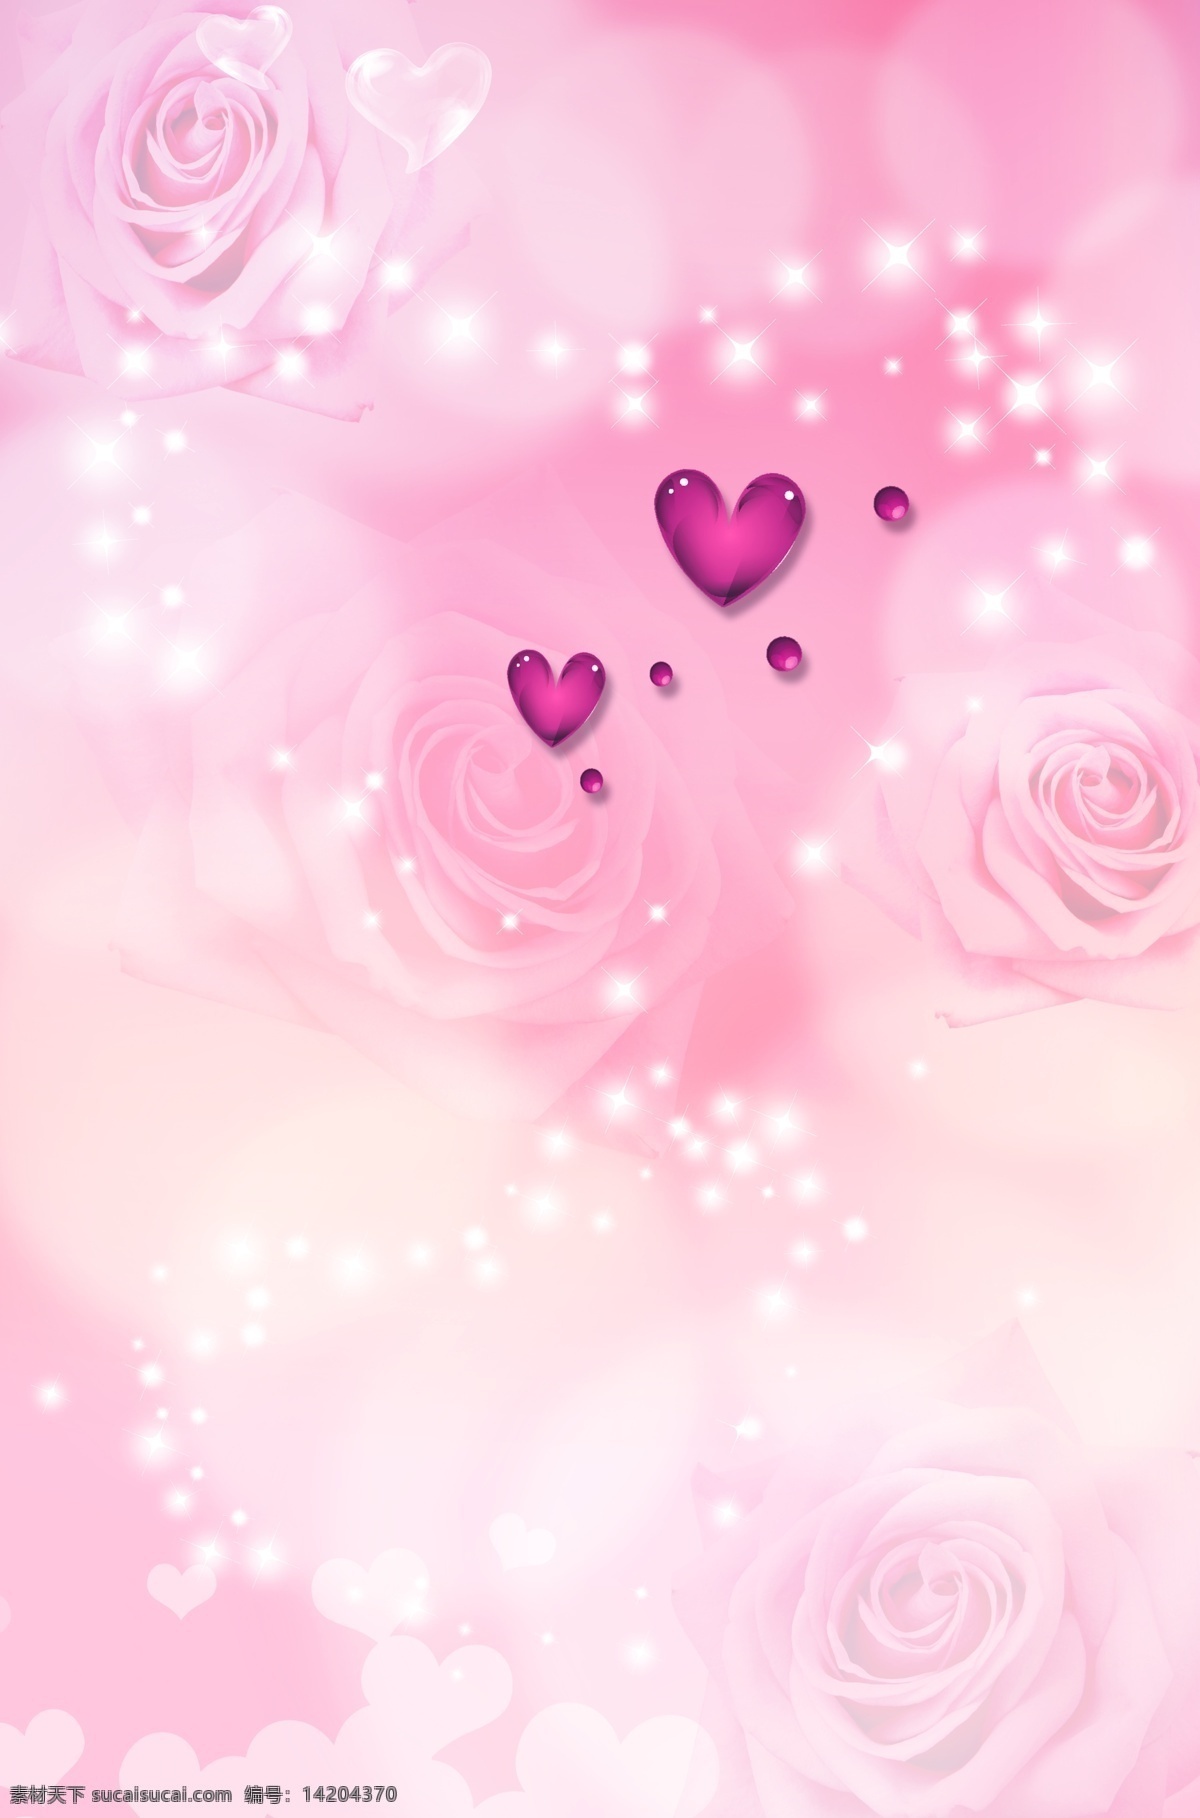 浪漫粉红背景 浪漫背景 粉红背景 粉红色背景 玫瑰背景 展板 展板模板 广告设计模板 源文件